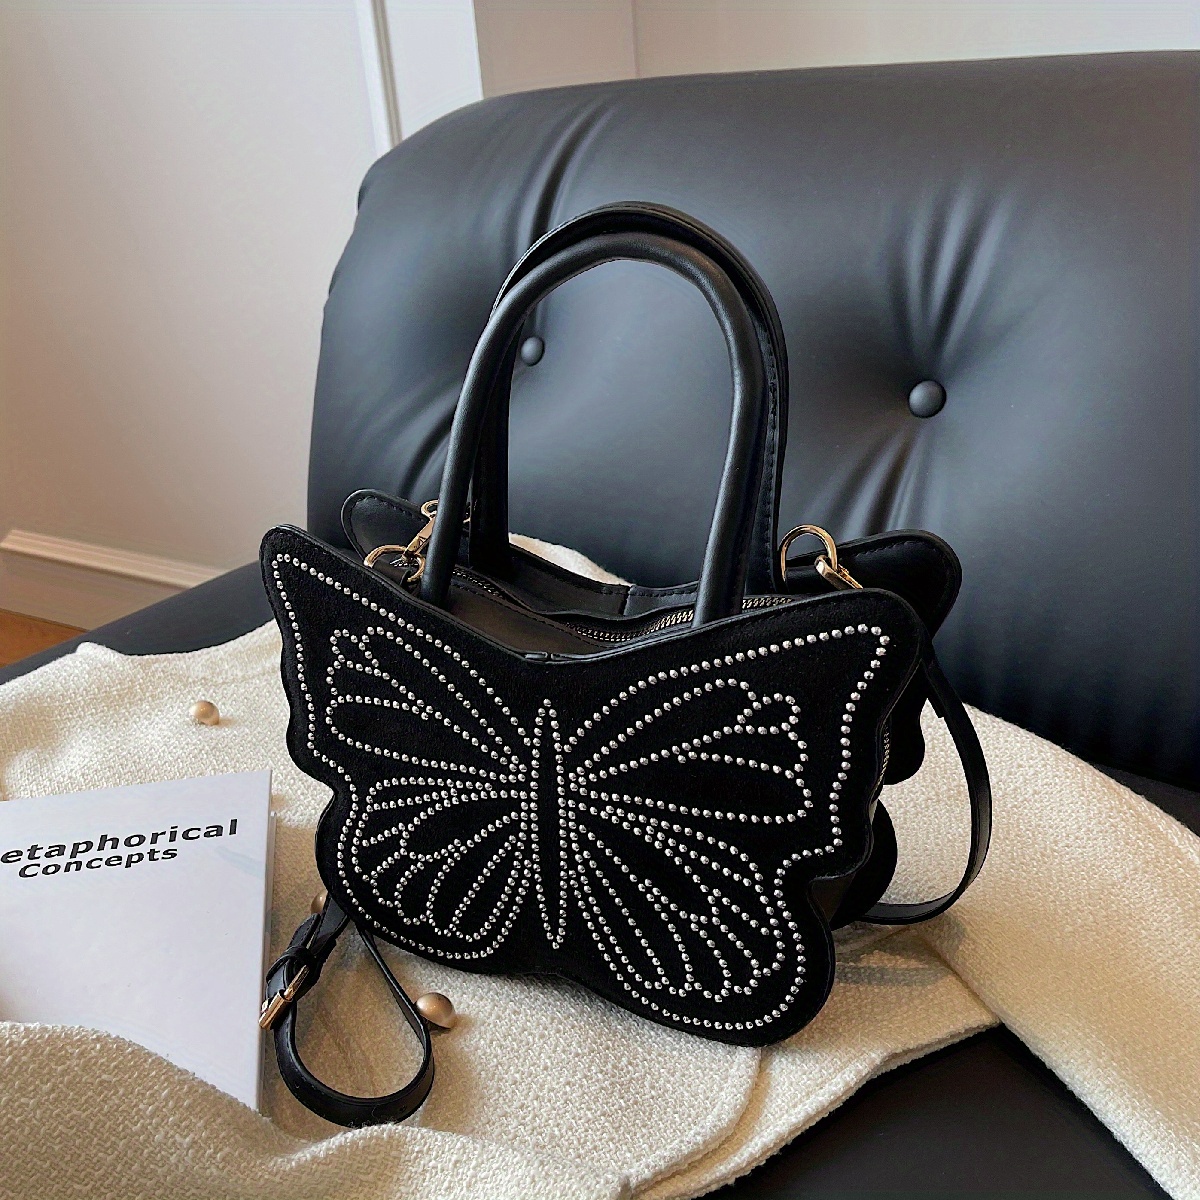 TIANA Y2K Beaded Sequined Butterfly Bag Crossbody Zip Top